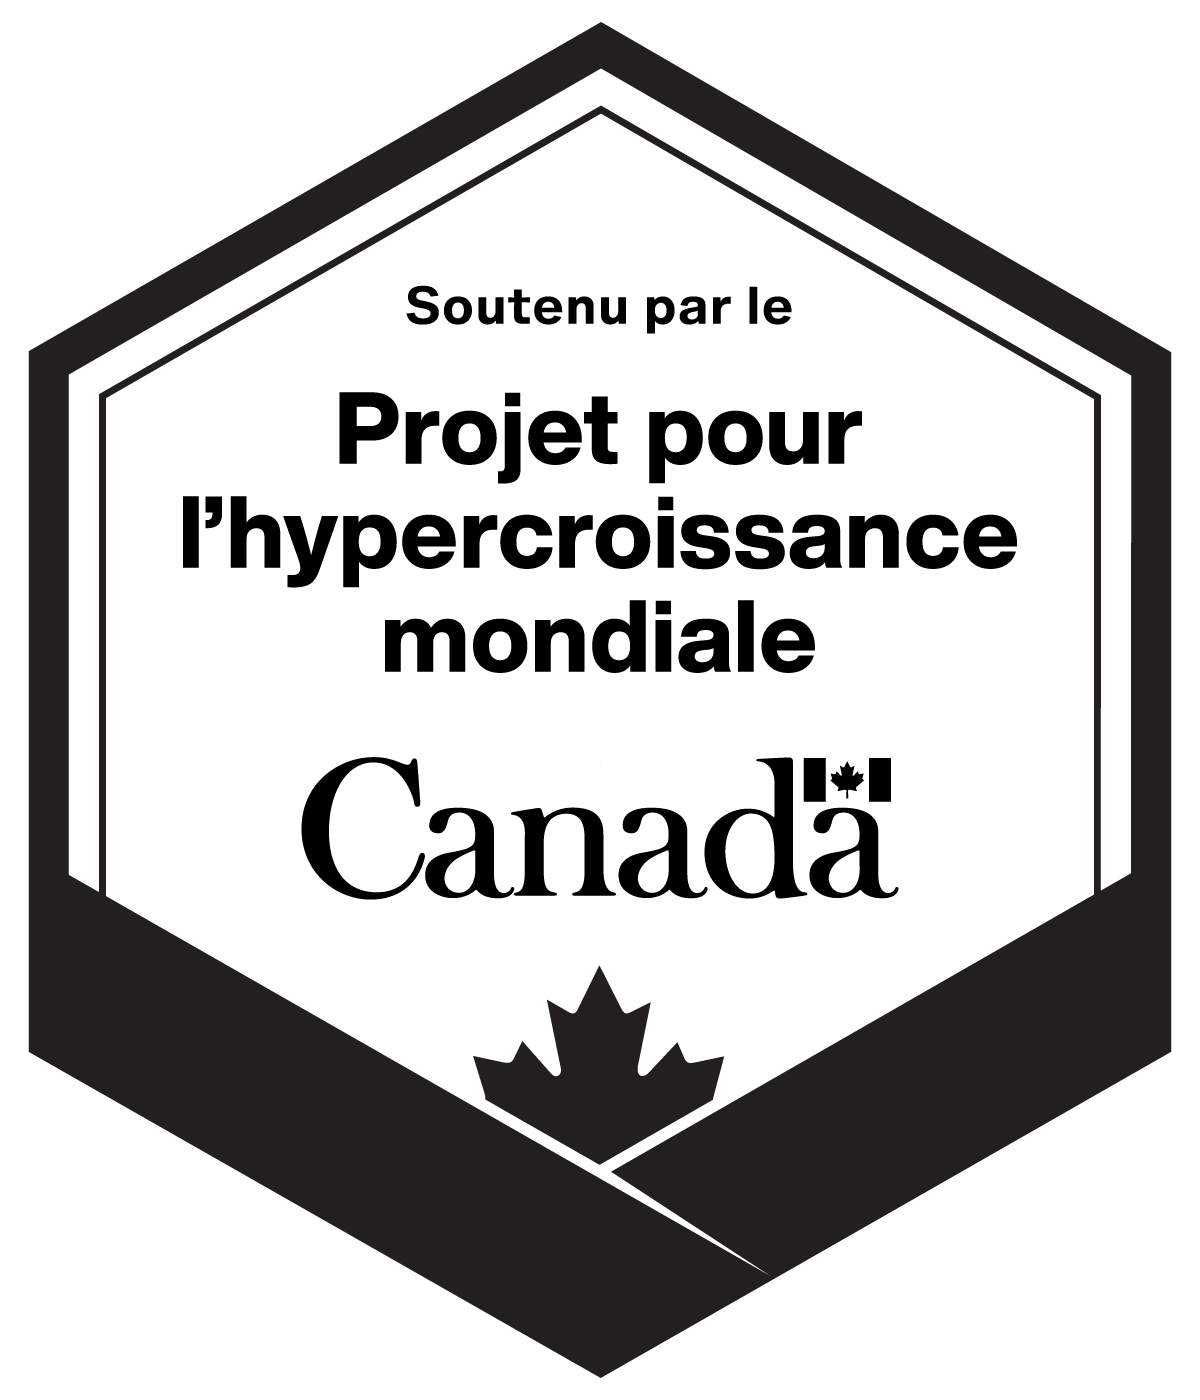 Soutenu par le Projet pour l'hypercroissance mondiale Canada